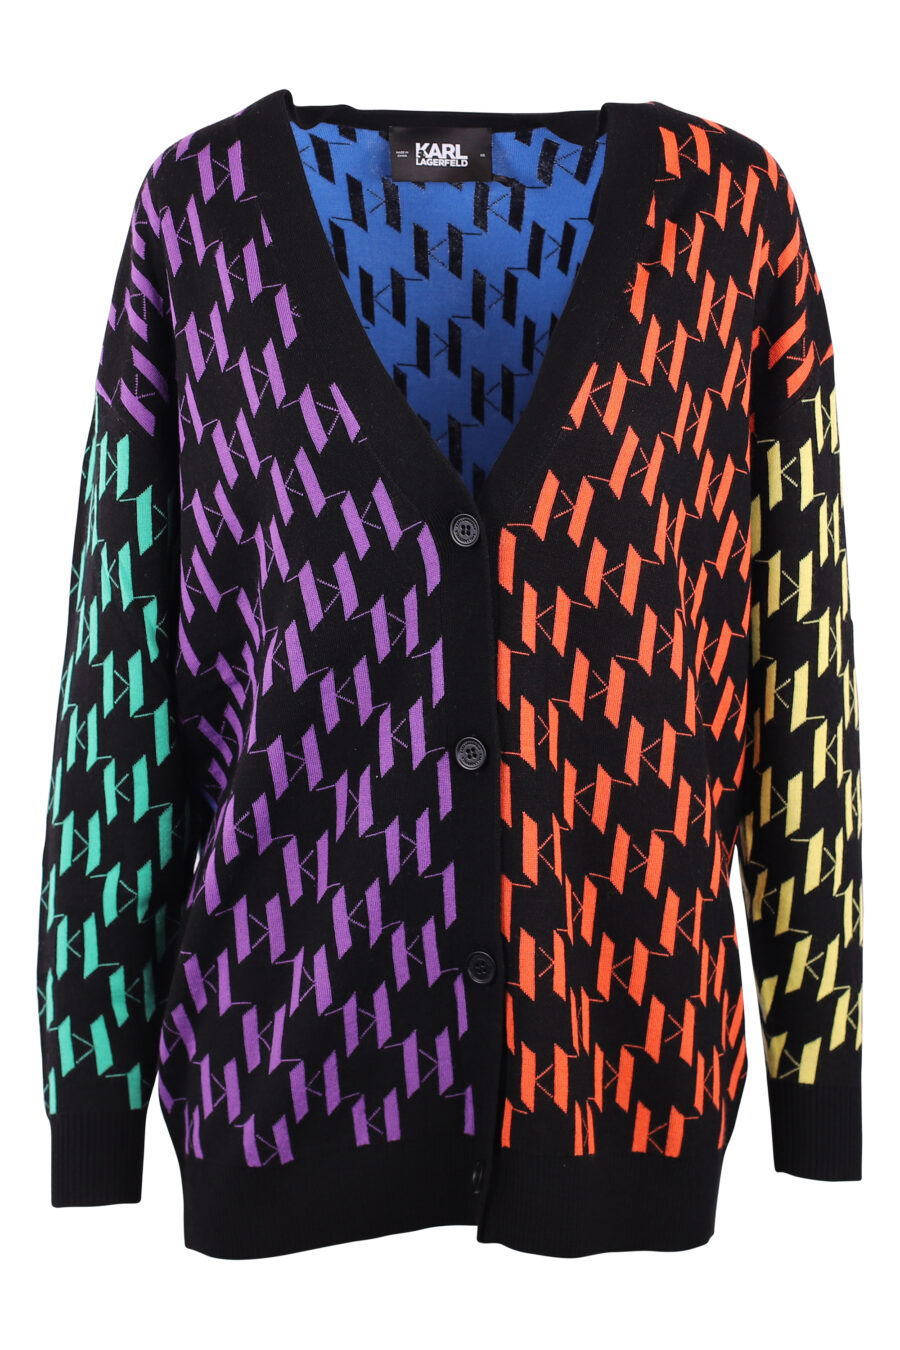 Casaco de malha multicolorido com monograma - IMG 6146